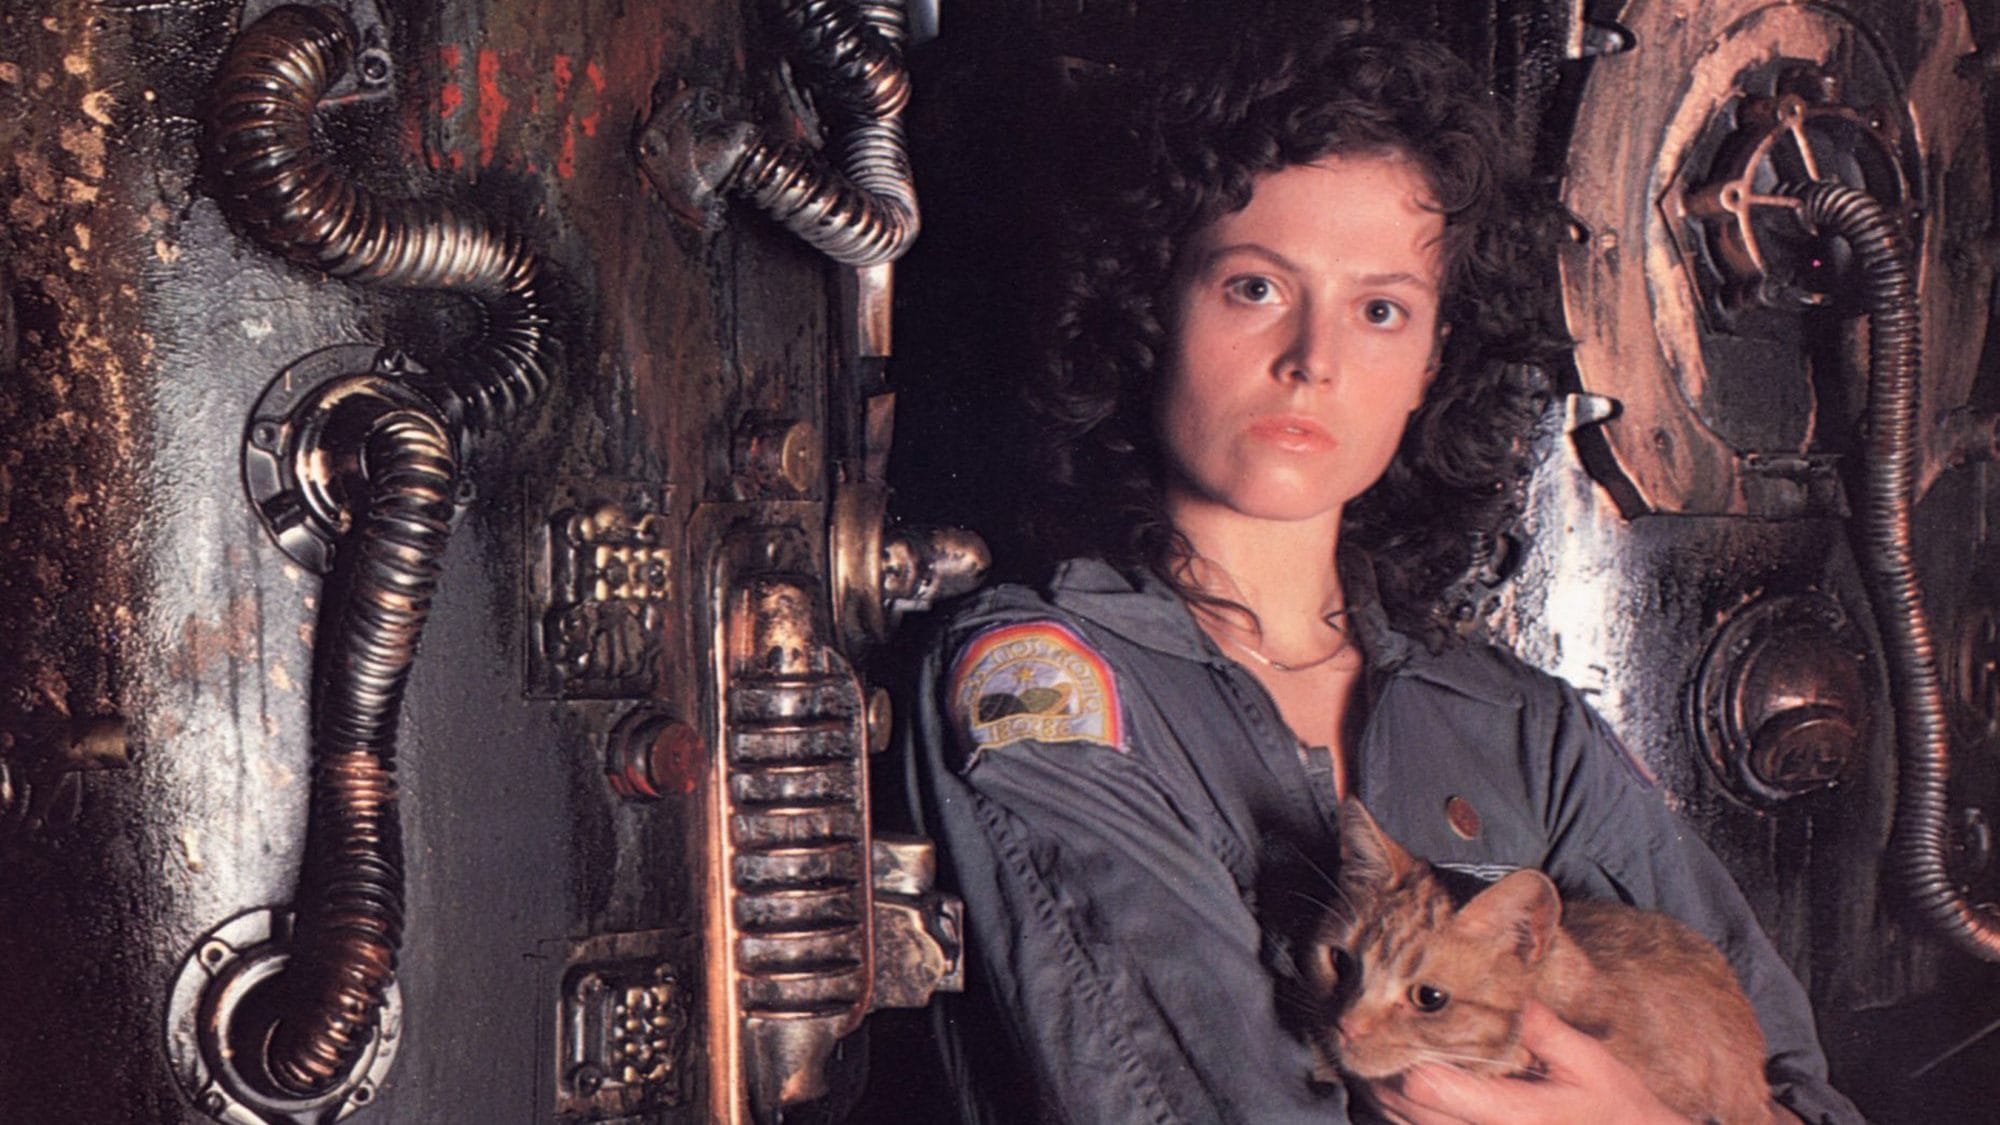 Ripley from Alien